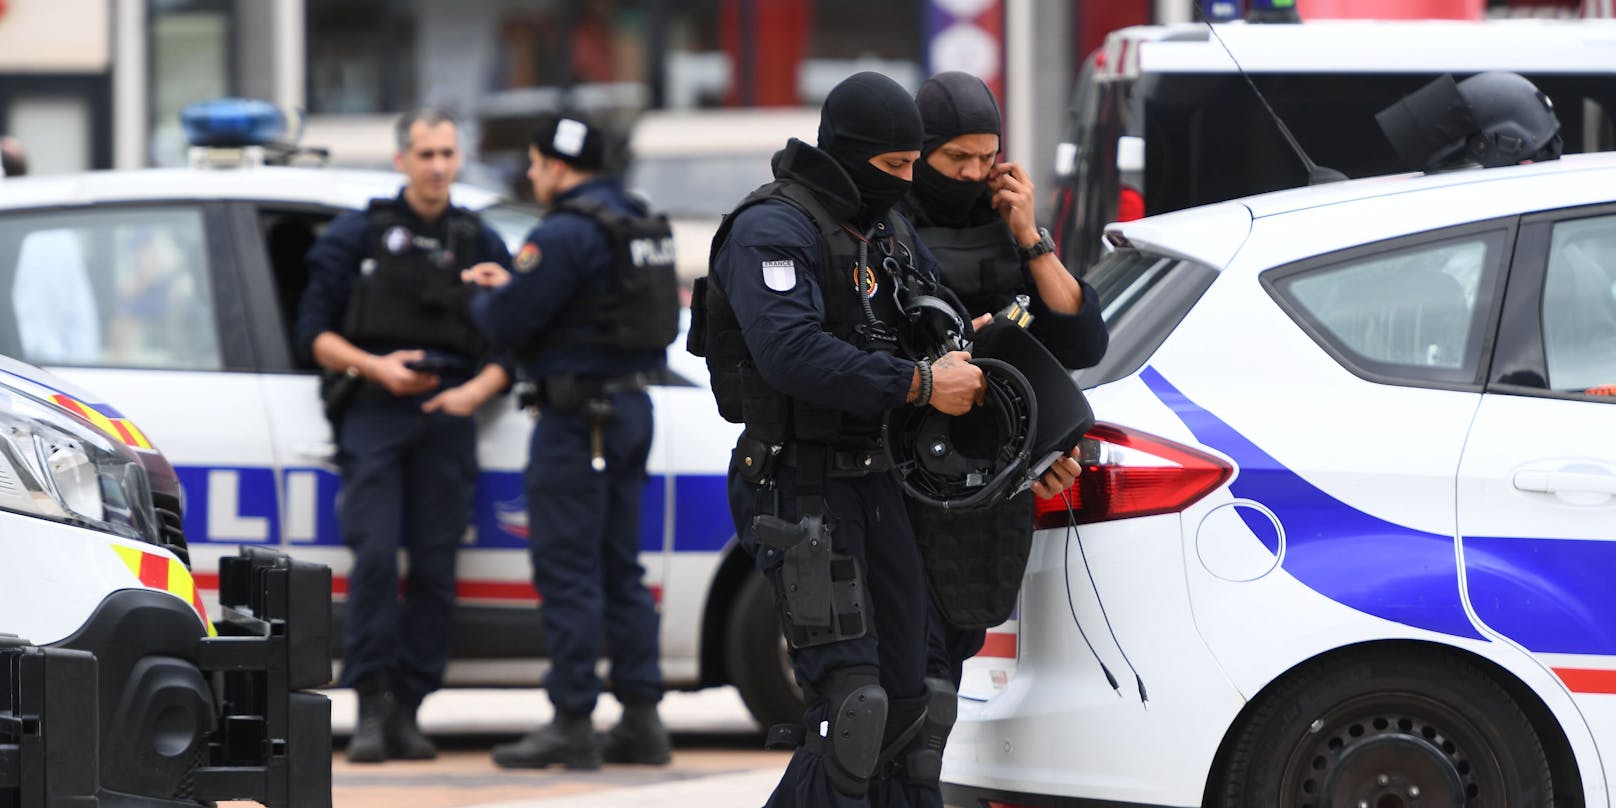 Schwerbewaffnete Polizisten und Soldaten räumten ein Einkaufszentrum in Paris. Zuvor war ein Bewaffneter im Inneren gemeldet worden.